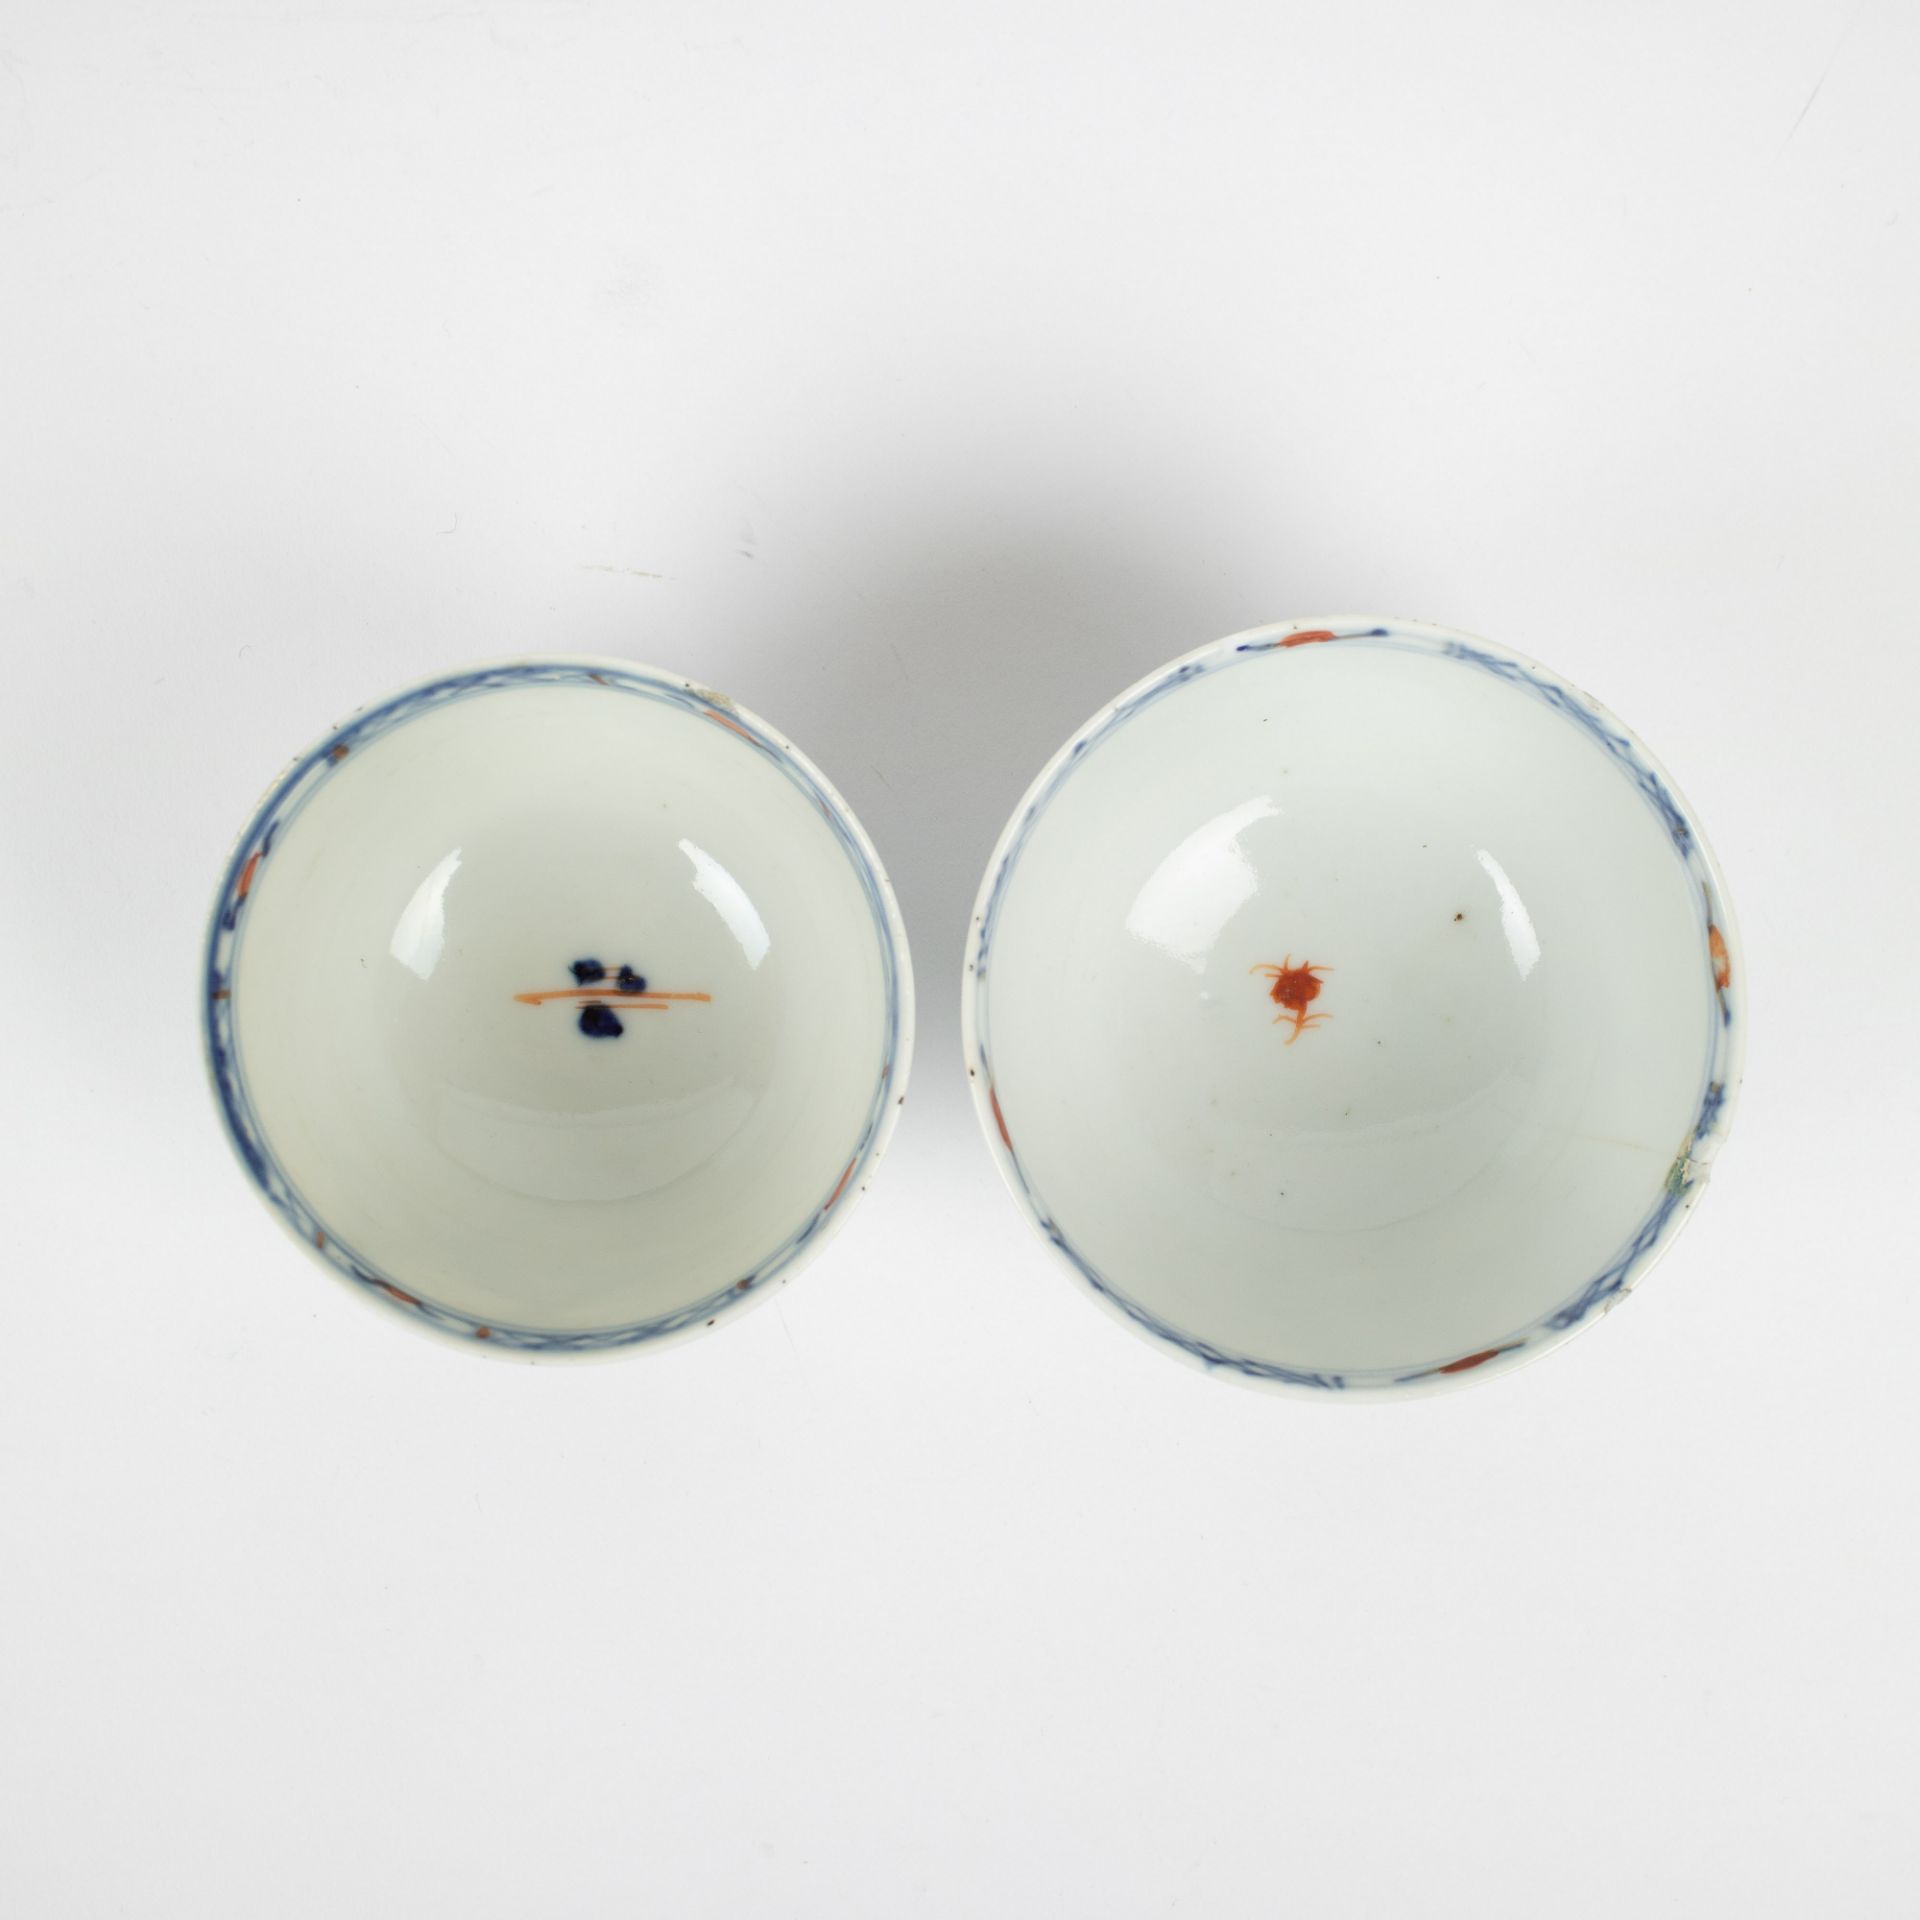 Chinese Imari porcelain, 18e century - Image 7 of 9